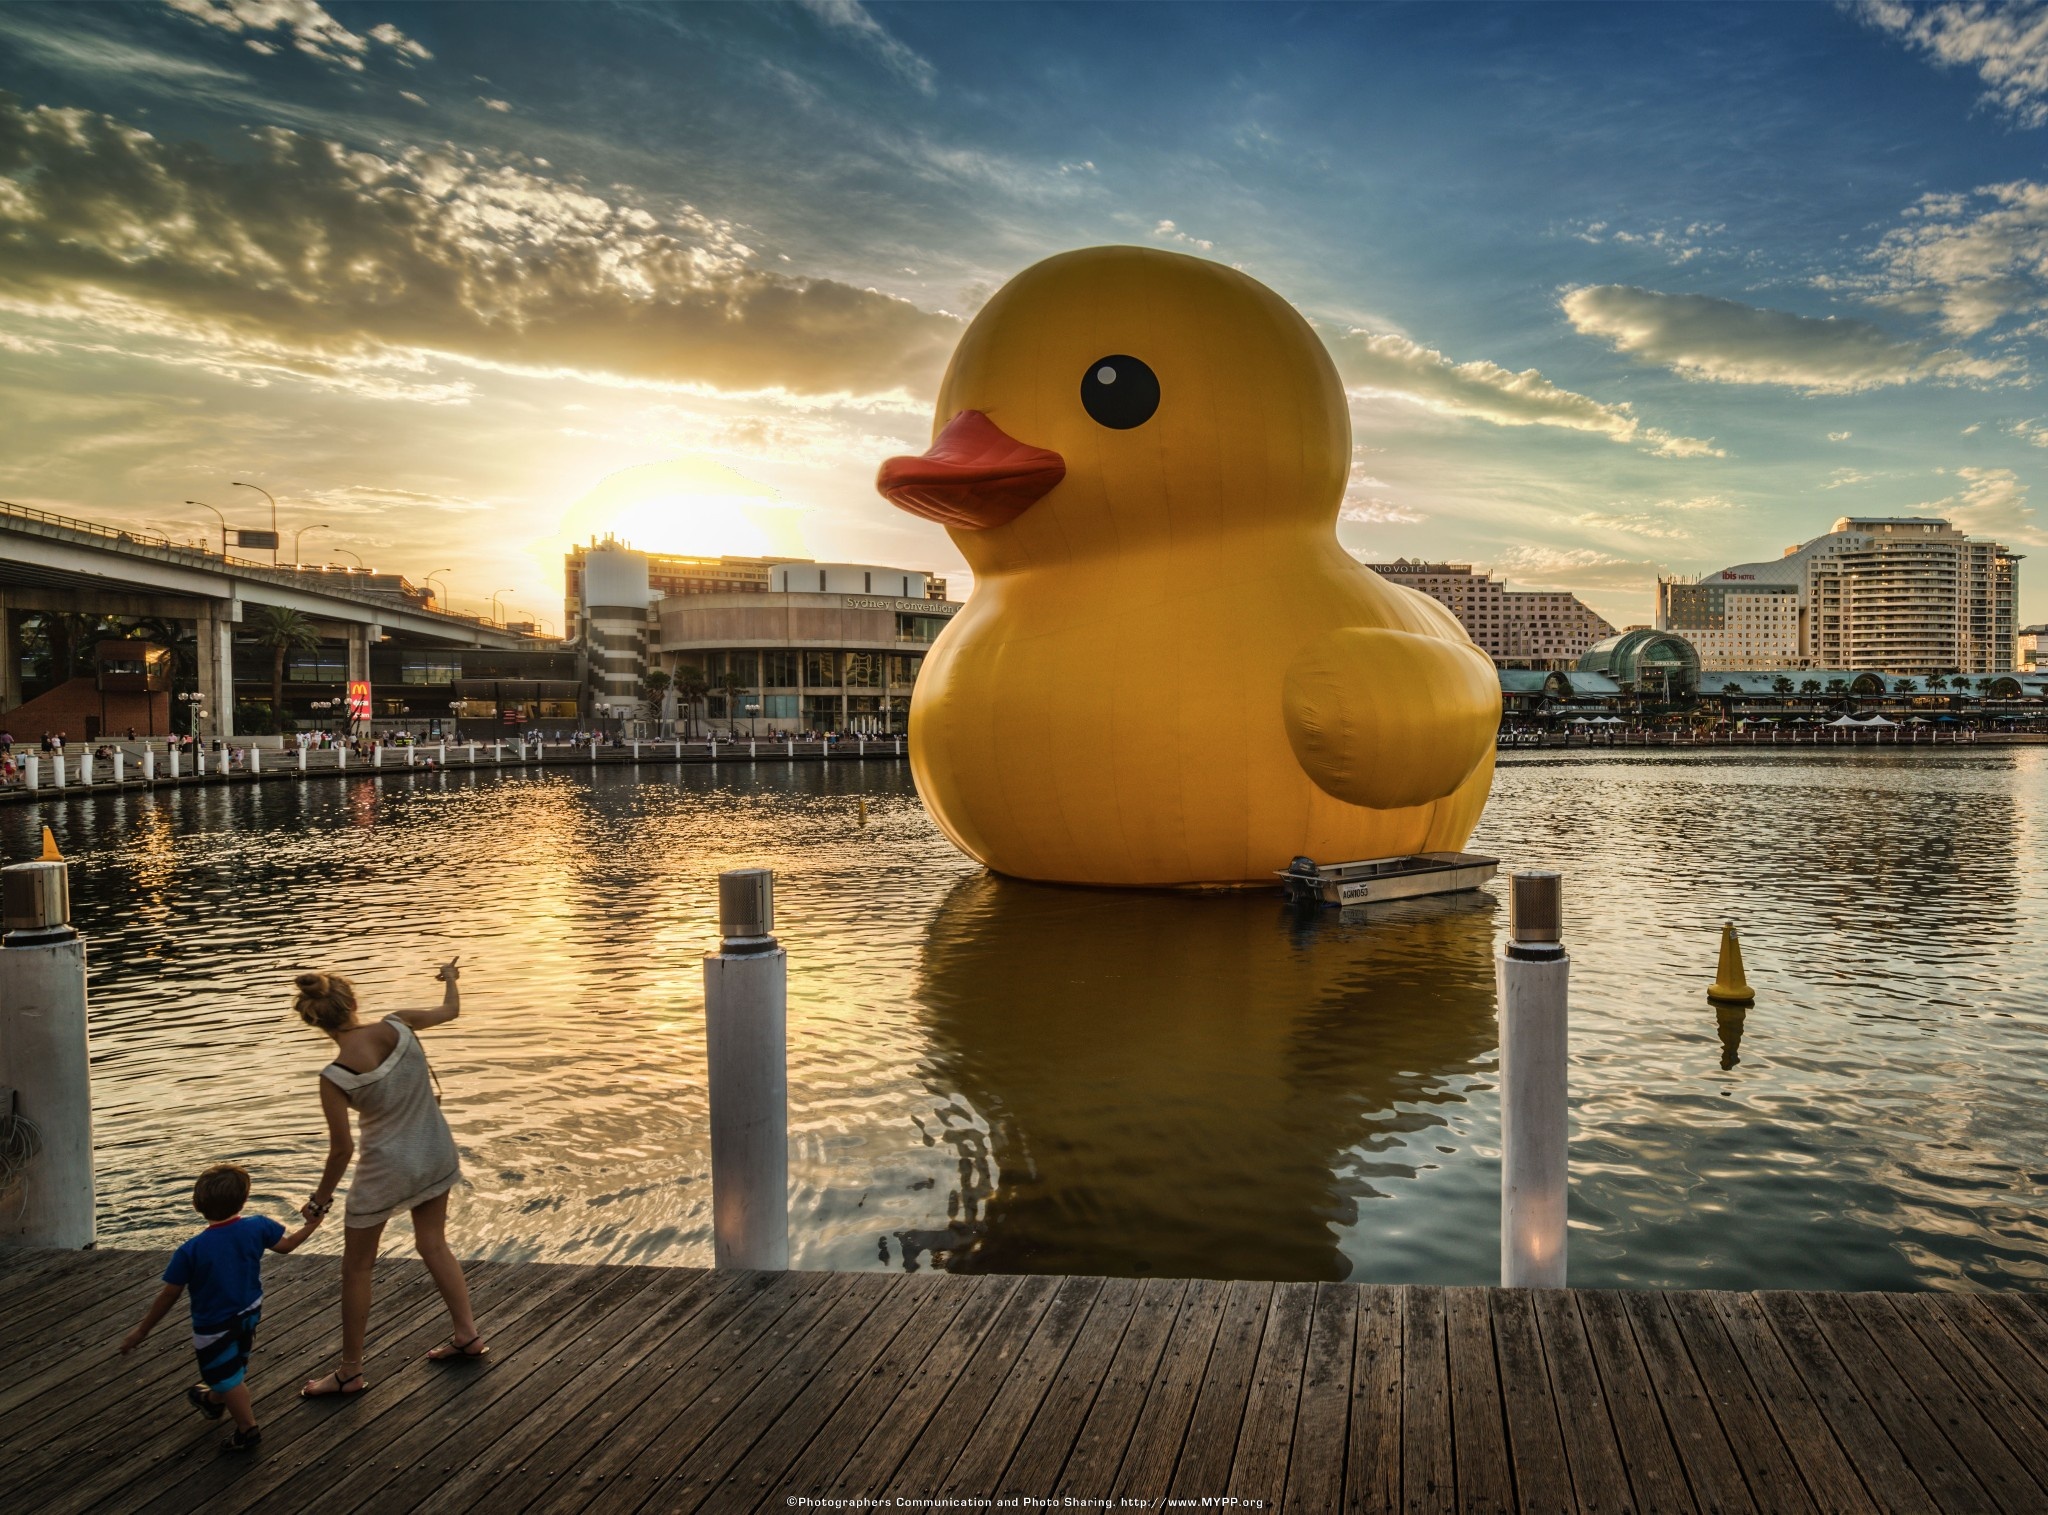 the-giant-rubber-ducky-Australia-sm.jpg